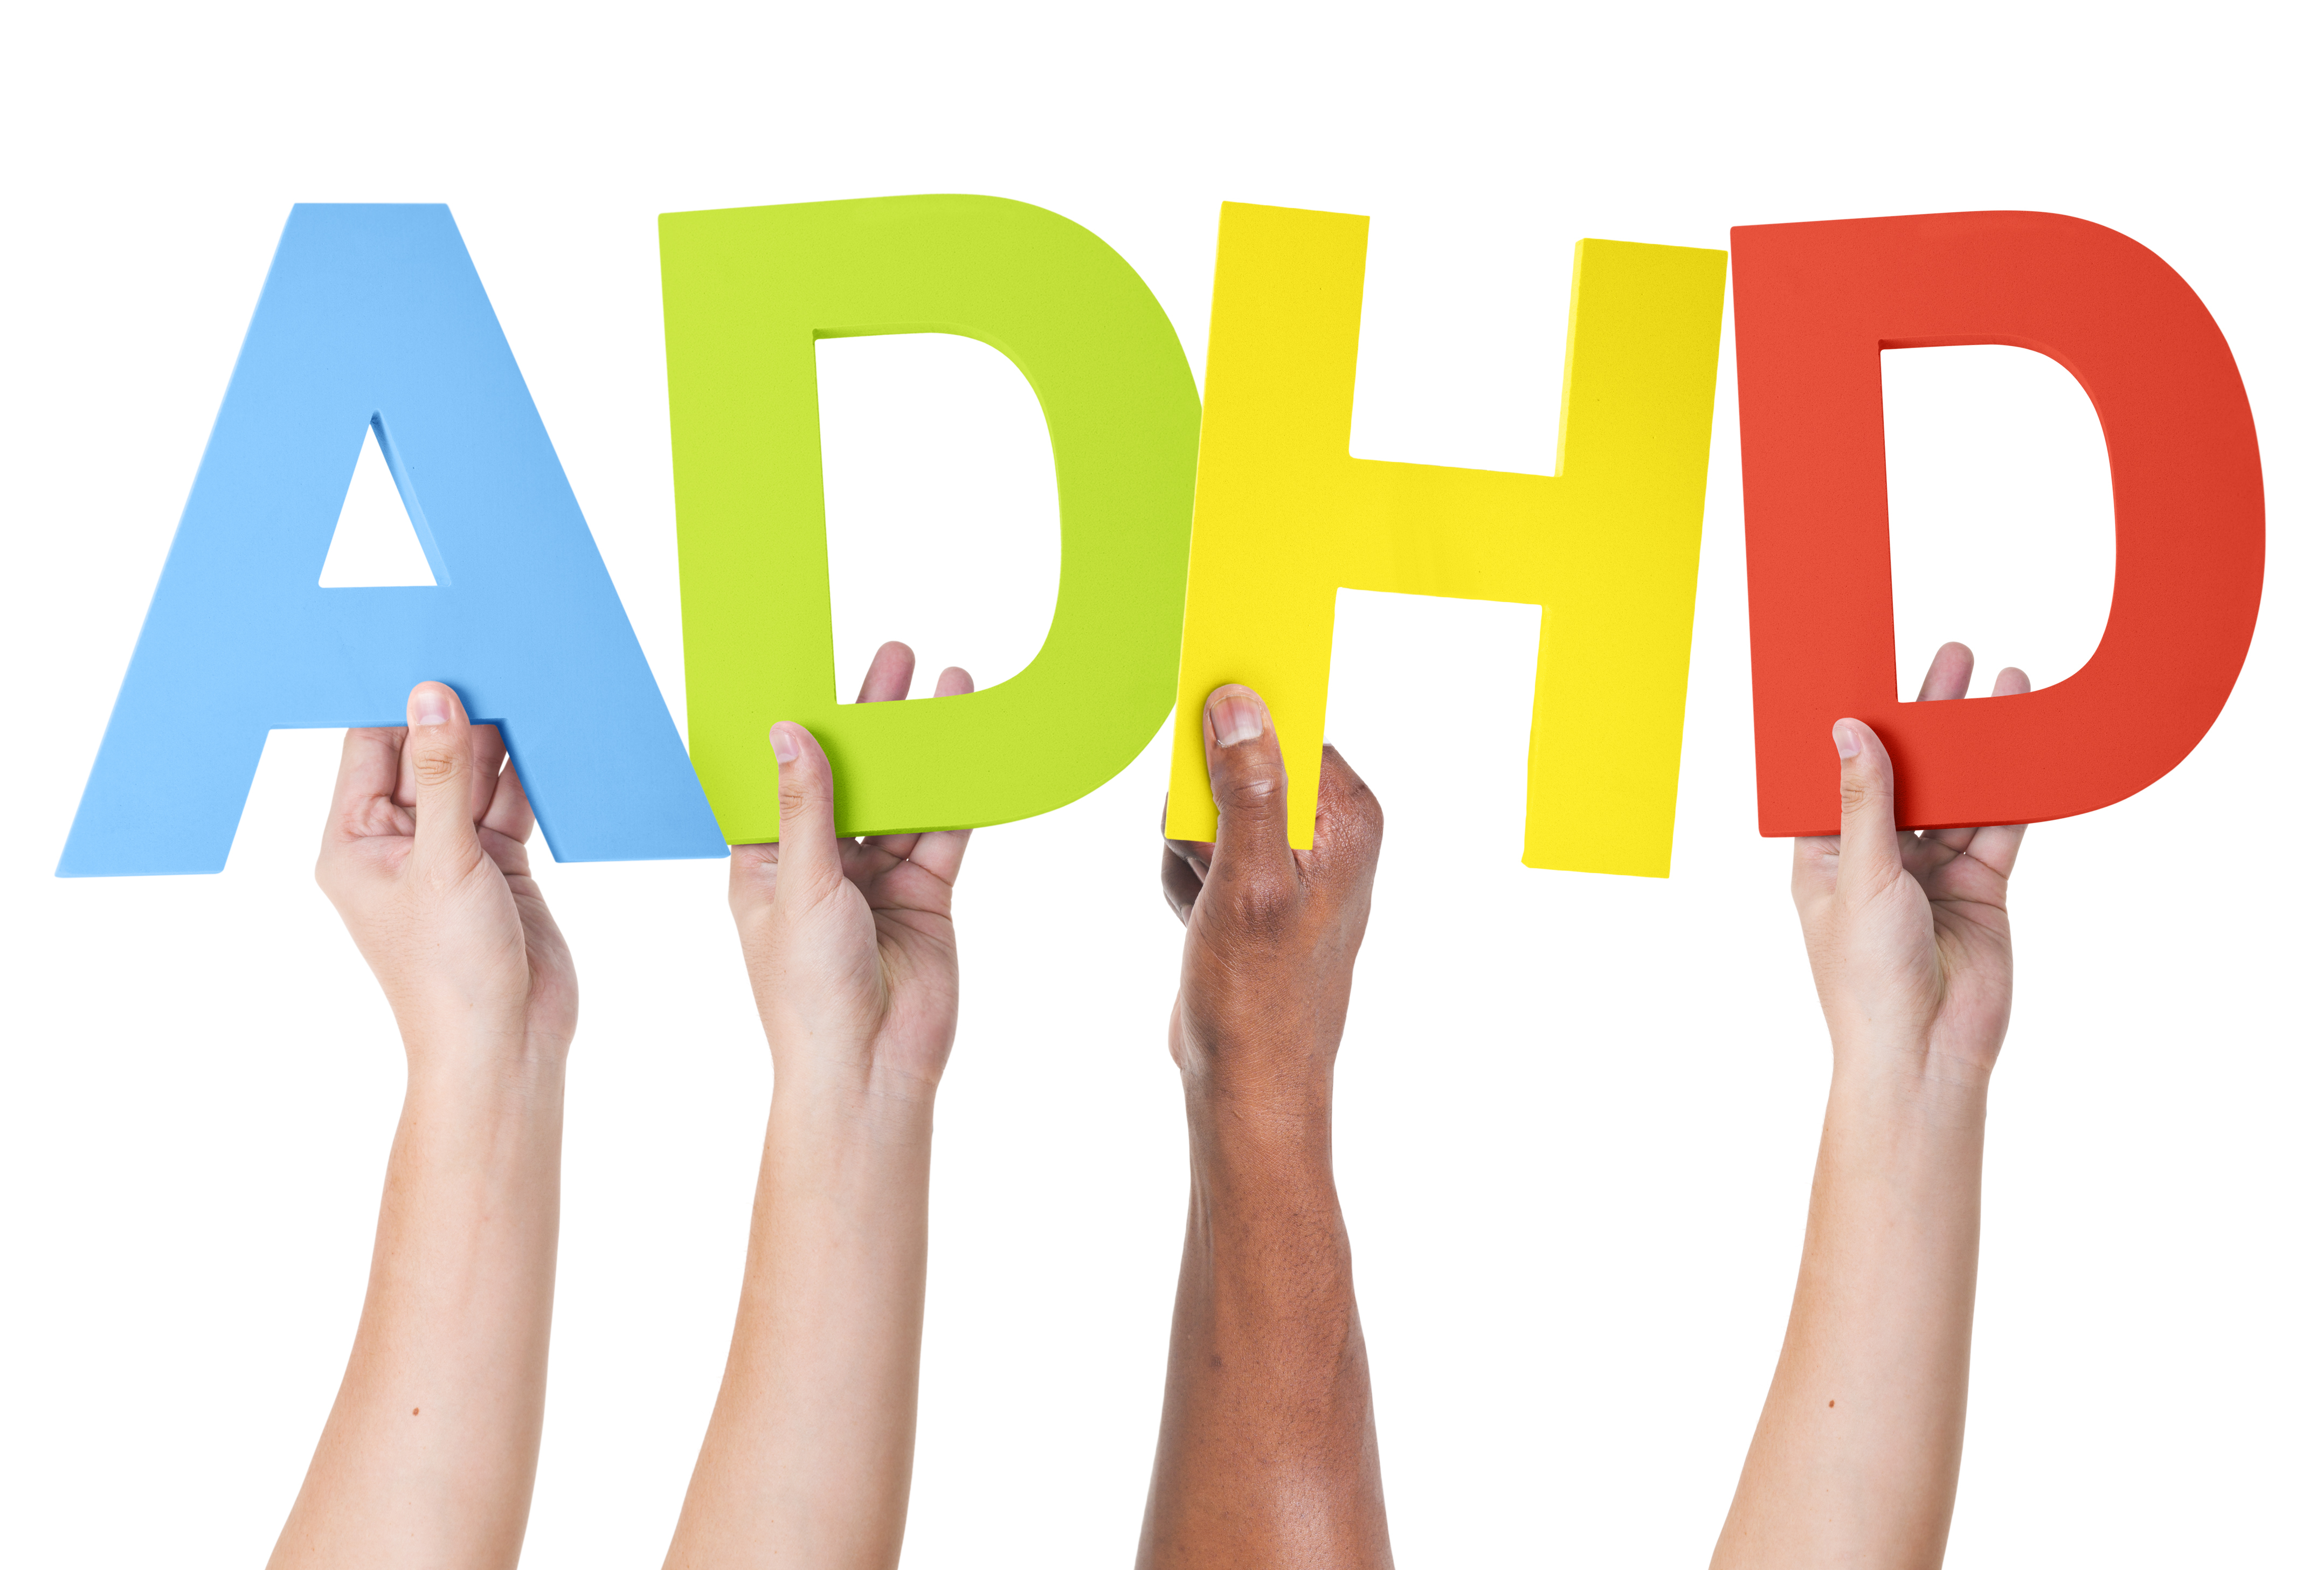 衝動症狀反叛行為較多 ADHD死亡率高1.5倍